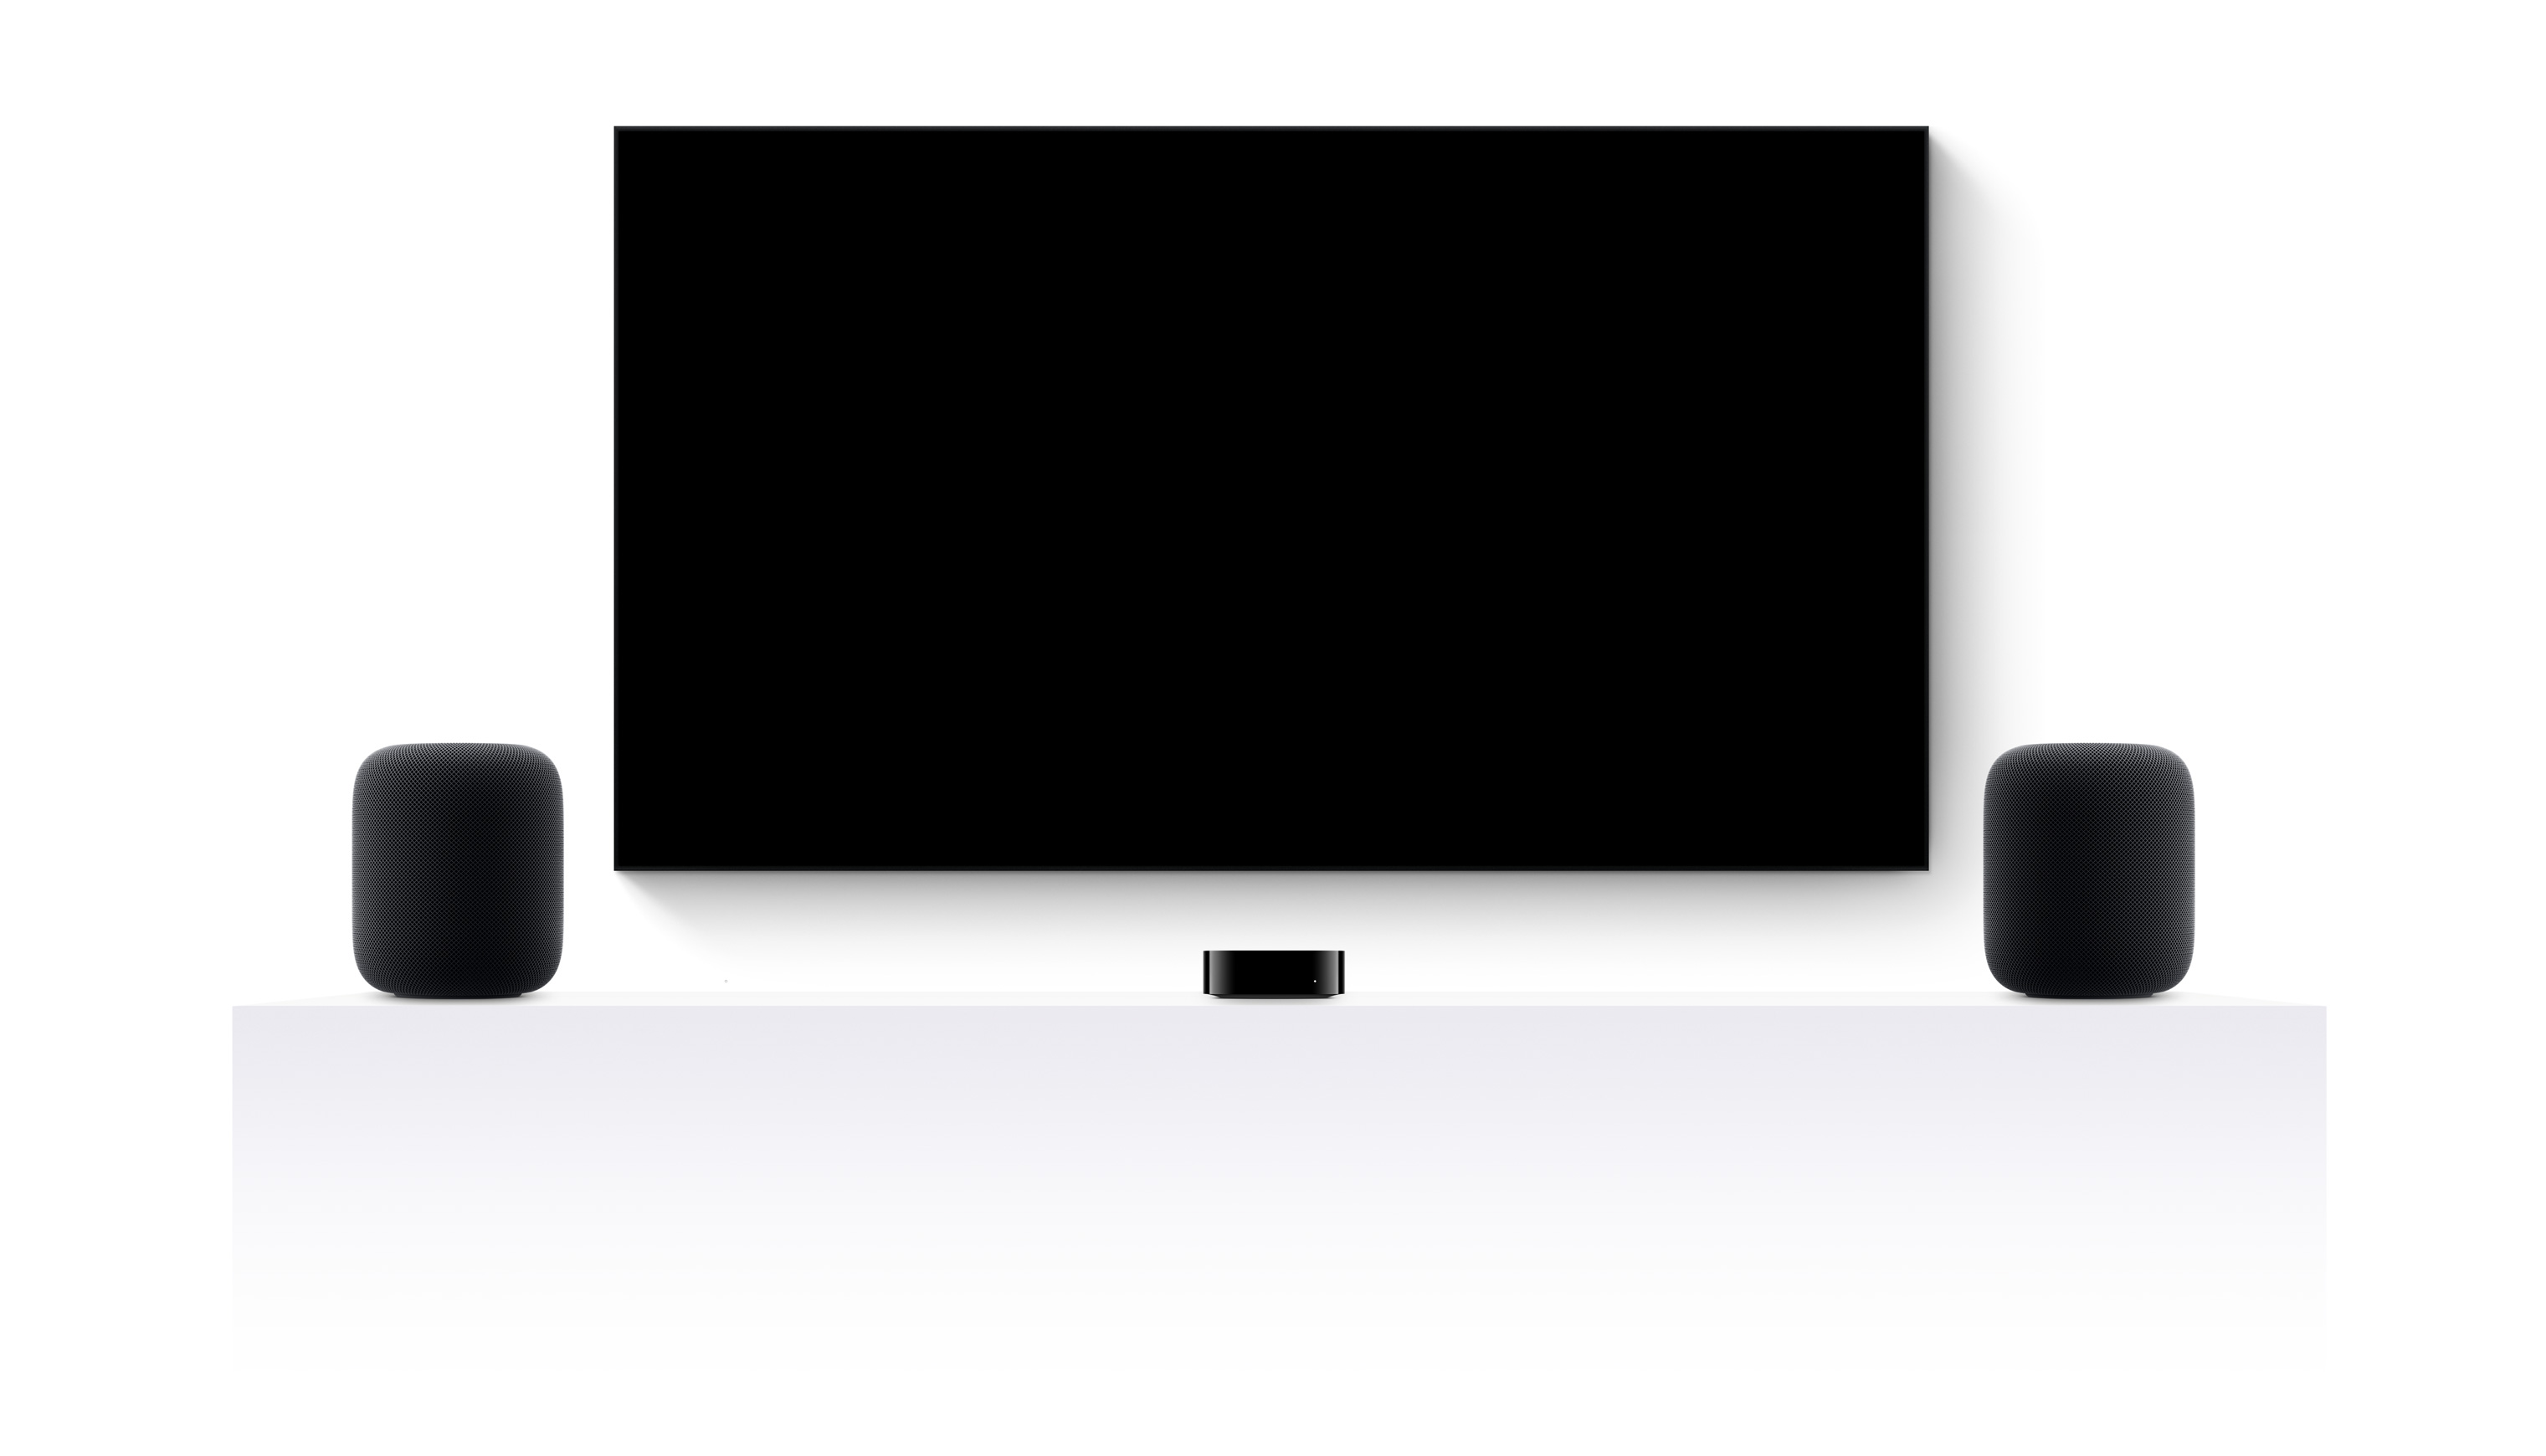 Apple TV 4Kと2台のHomePod、そしてApple TV+の様々な映画や番組を編集した予告編が映し出された薄型テレビが並んでいる